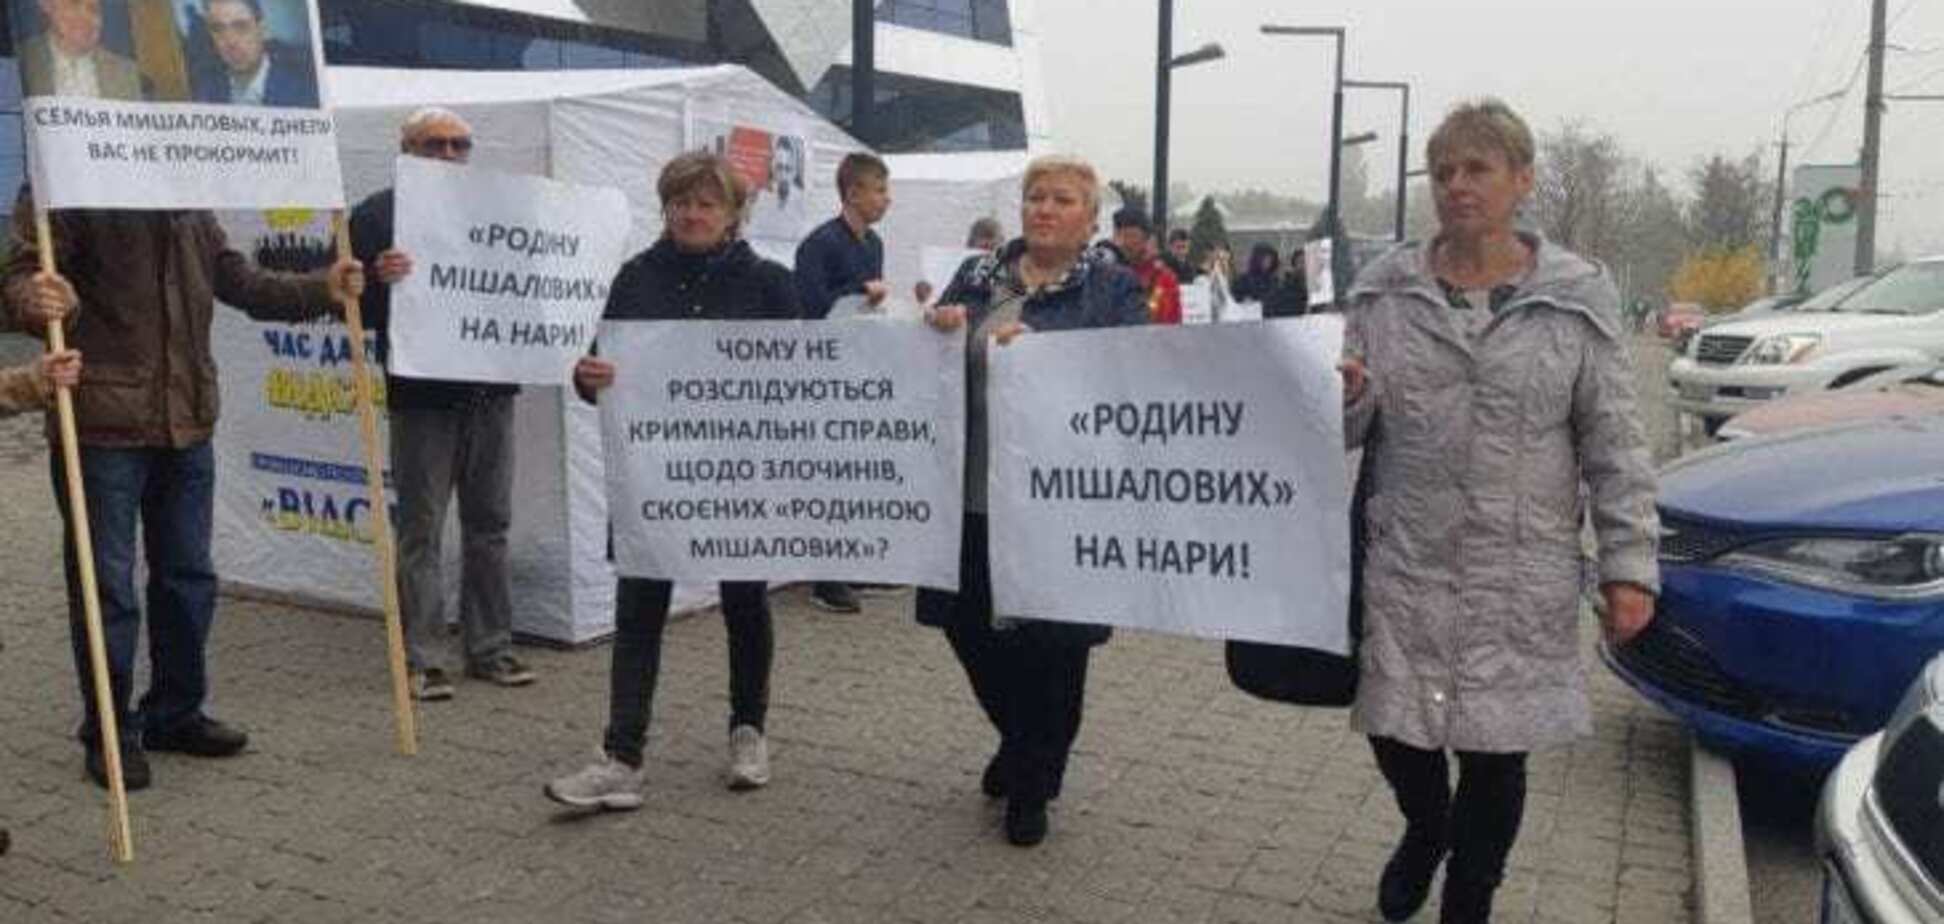 В Днепре активисты начали пикет офиса тендерного короля Мишалова